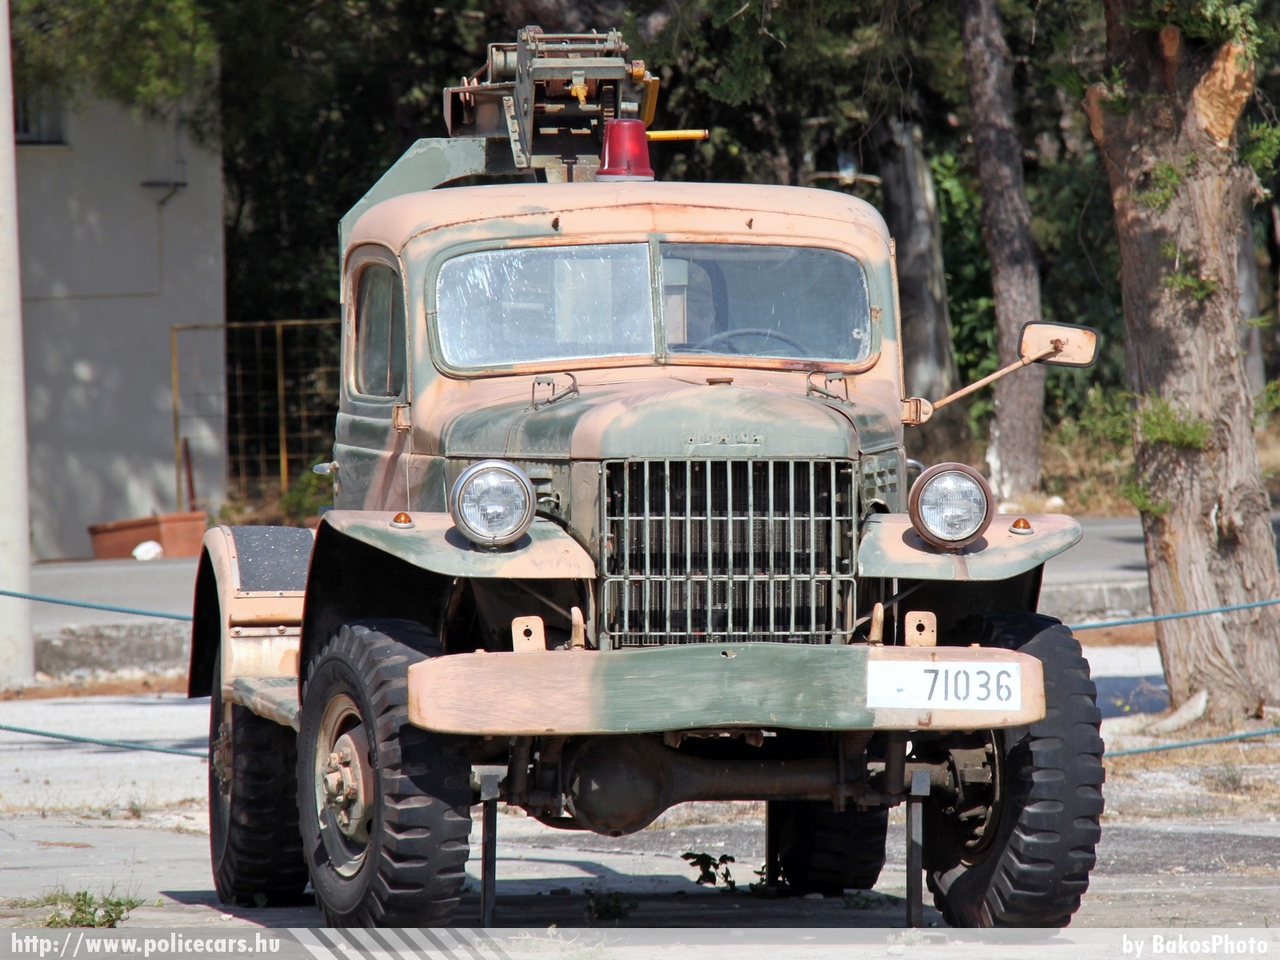 Dodge Power Wagon, fotó: BakosPhoto
Keywords: görög Görögország tûzoltó tûzoltóautó tûzoltóság Greece greek fire firetruck military katonai